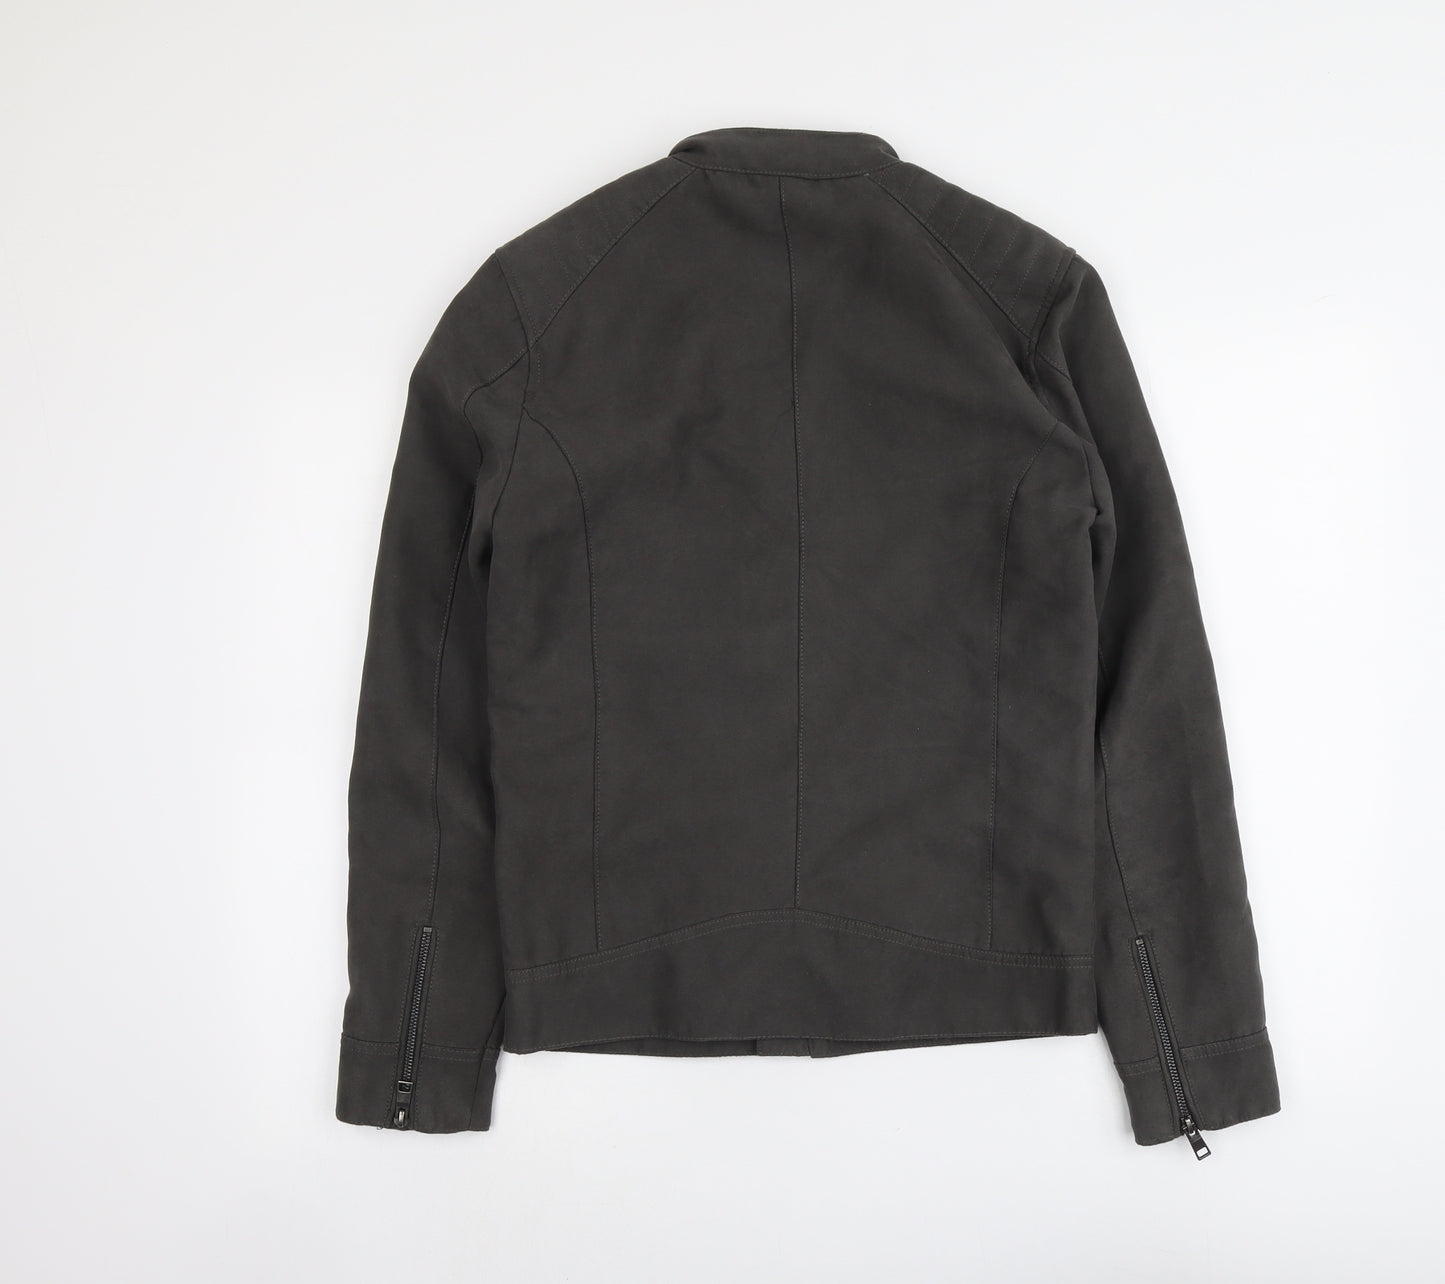 NEXT Mens Grey Jacket Size XS Zip - Suede Effect